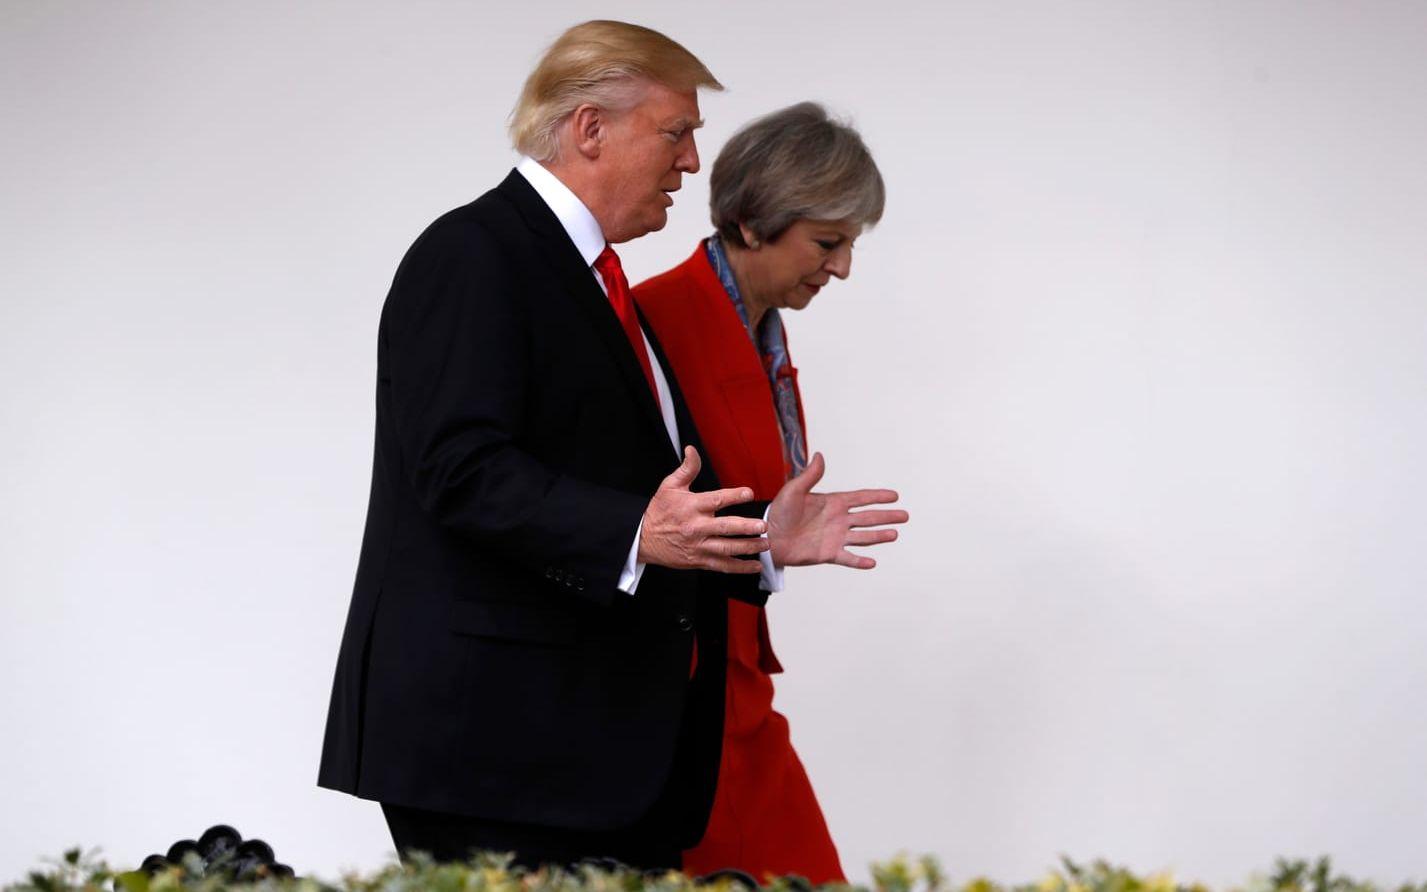 27 JANUARI: Donald Trump tar emot Storbritanniens premiärminister Theresa May. Han fattar även beslut om att införa hårdare restriktioner om vilka som ska få resa in i USA, i synnerhet riktat mot muslimska länder. Foto: Stella